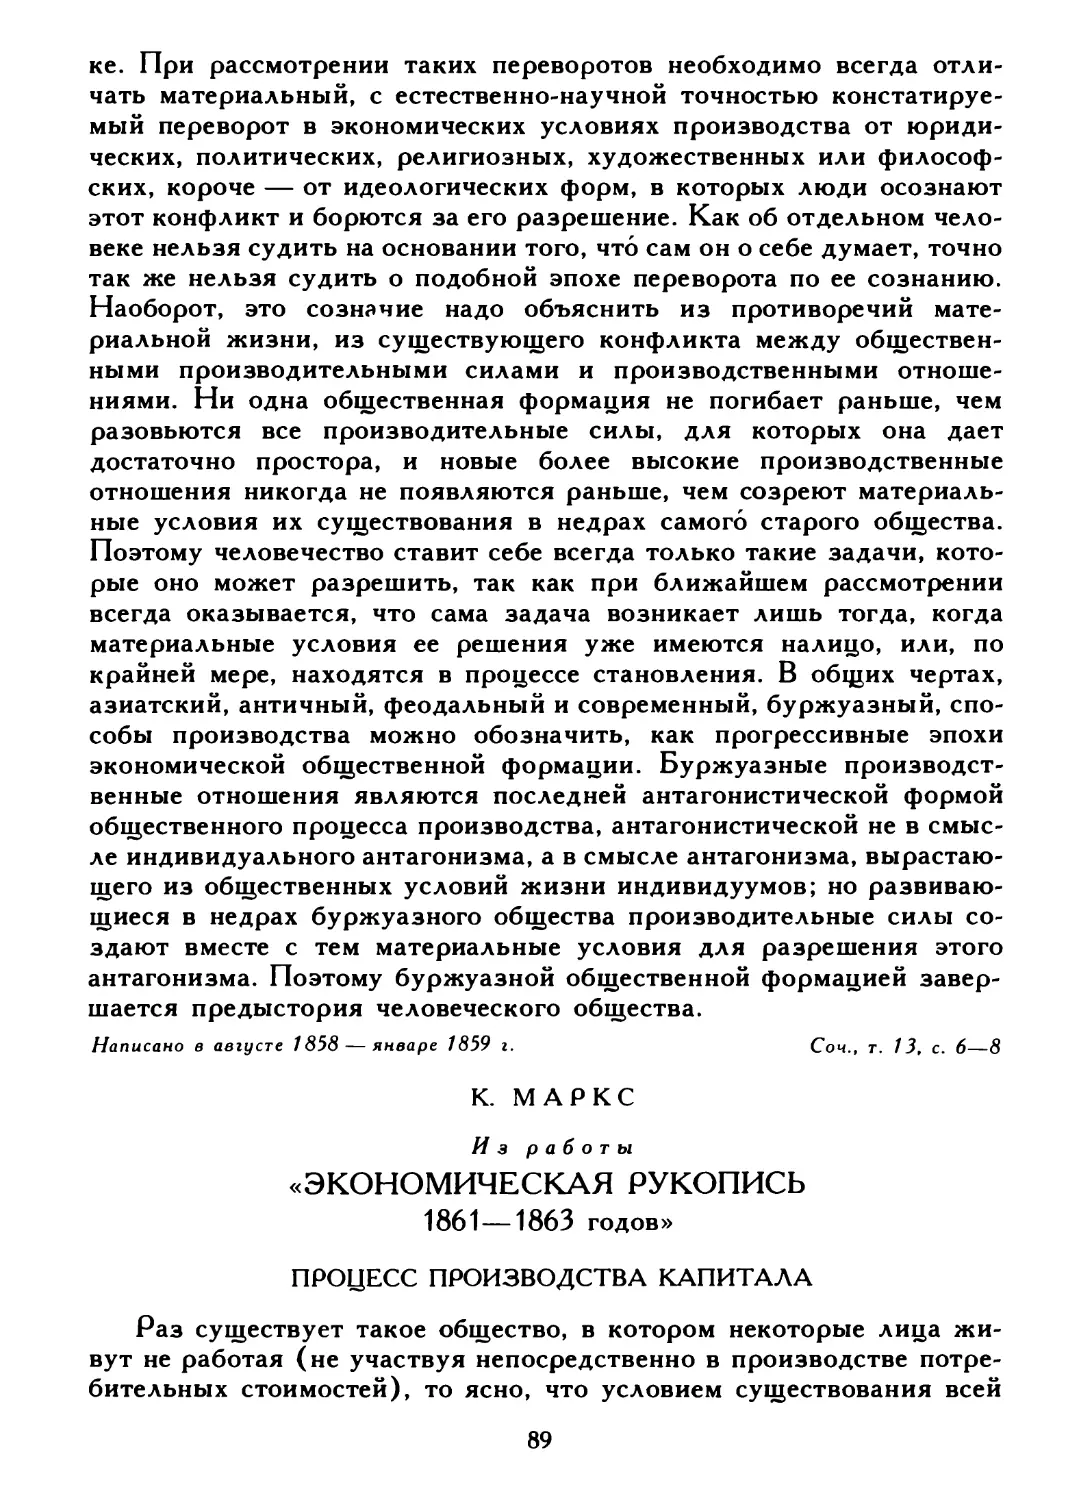 К. Маркс. Из работы «Экономическая рукопись 1861—1863 годов»